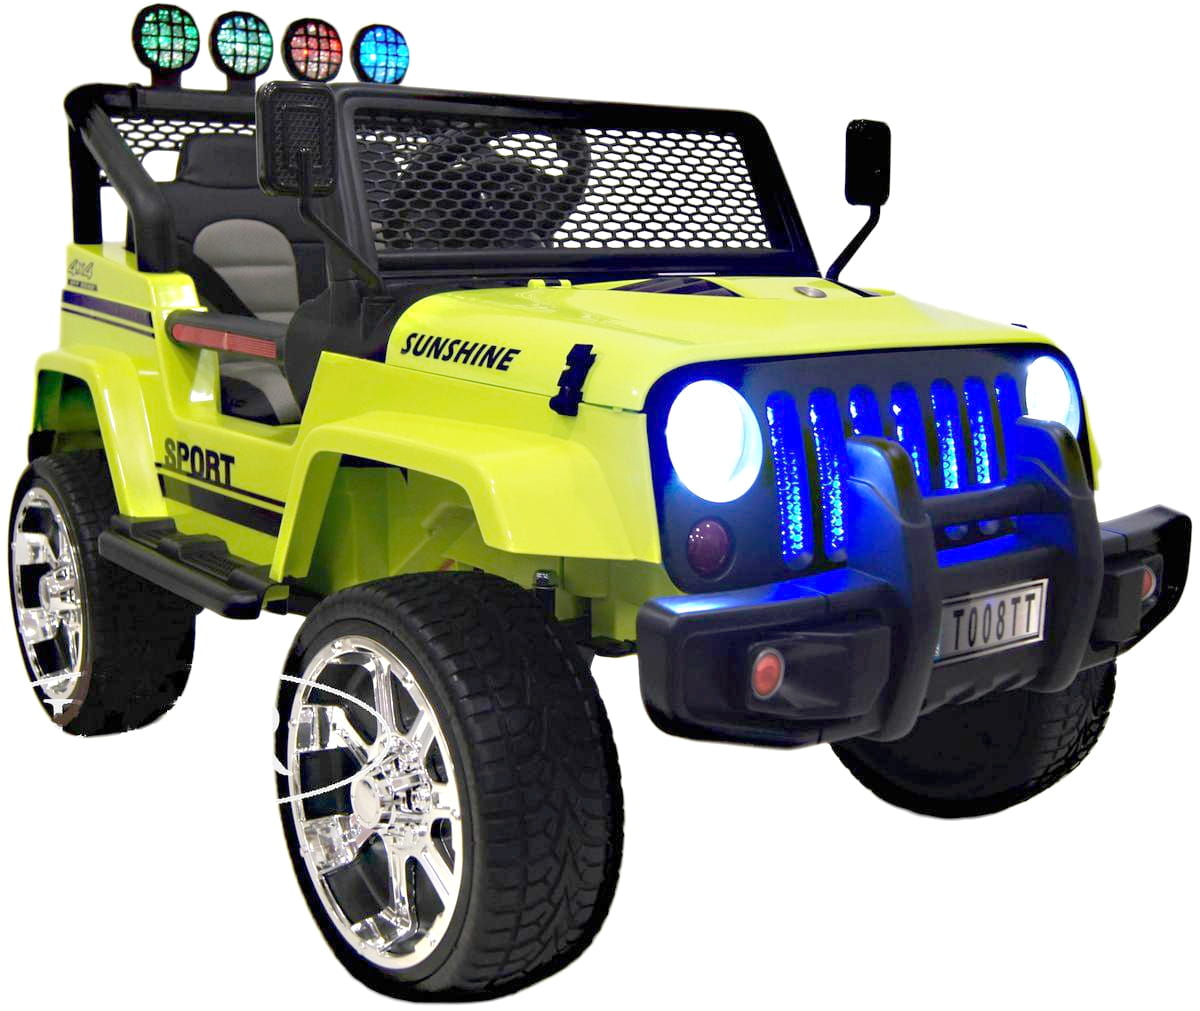 Электромобиль River Toys Jeep T008TT с дистанционным управлением (полный привод) - зеленый